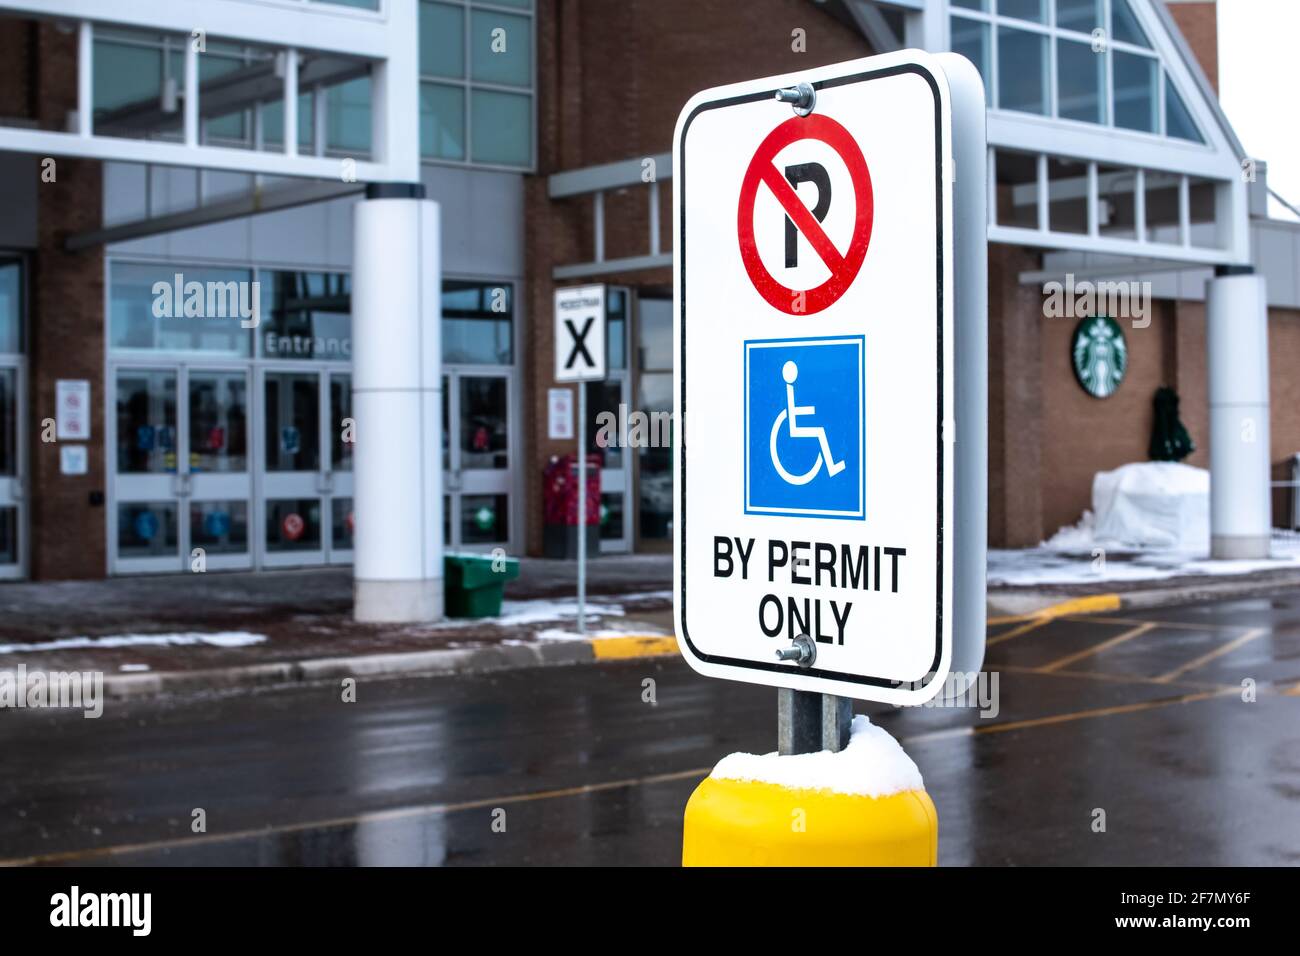 Londra, Ontario, Canada - Febbraio 15 2021: Parcheggio non disponibile, con cartello di sola autorizzazione con il simbolo di accesso internazionale visualizzato su un cartello rettangolare verticale. Foto Stock